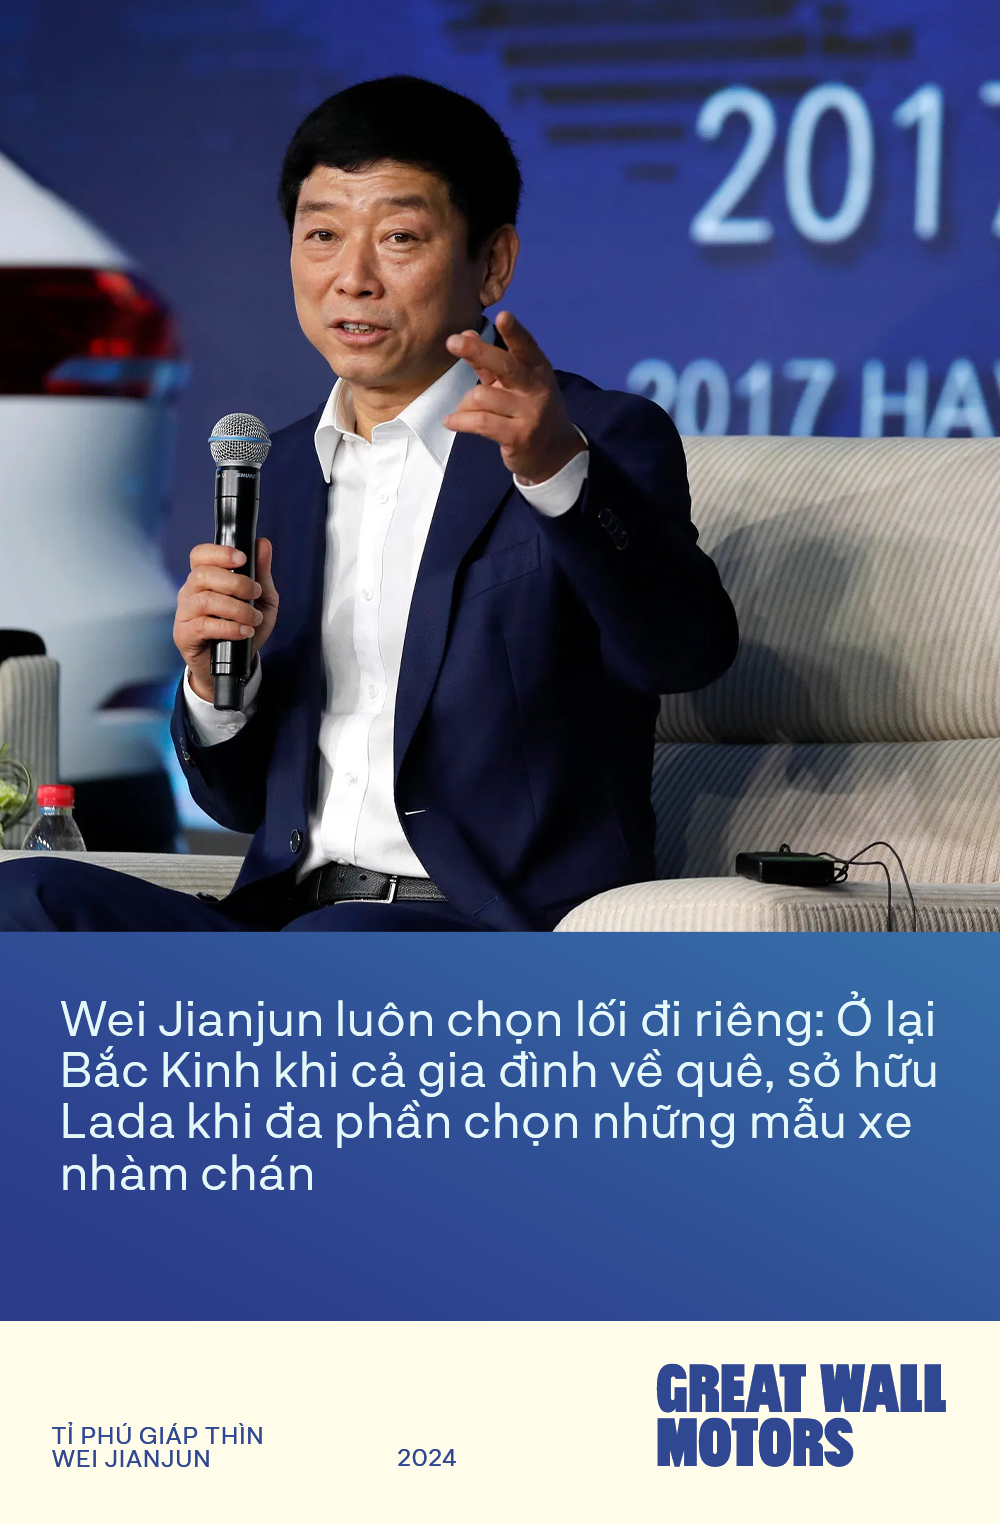 Tỉ phú Giáp Thìn Wei Jianjun - Người biến hãng xe Trung Quốc từ căn tường đổ sụp tới ‘Vạn lý trường thành’ - Ảnh 1.